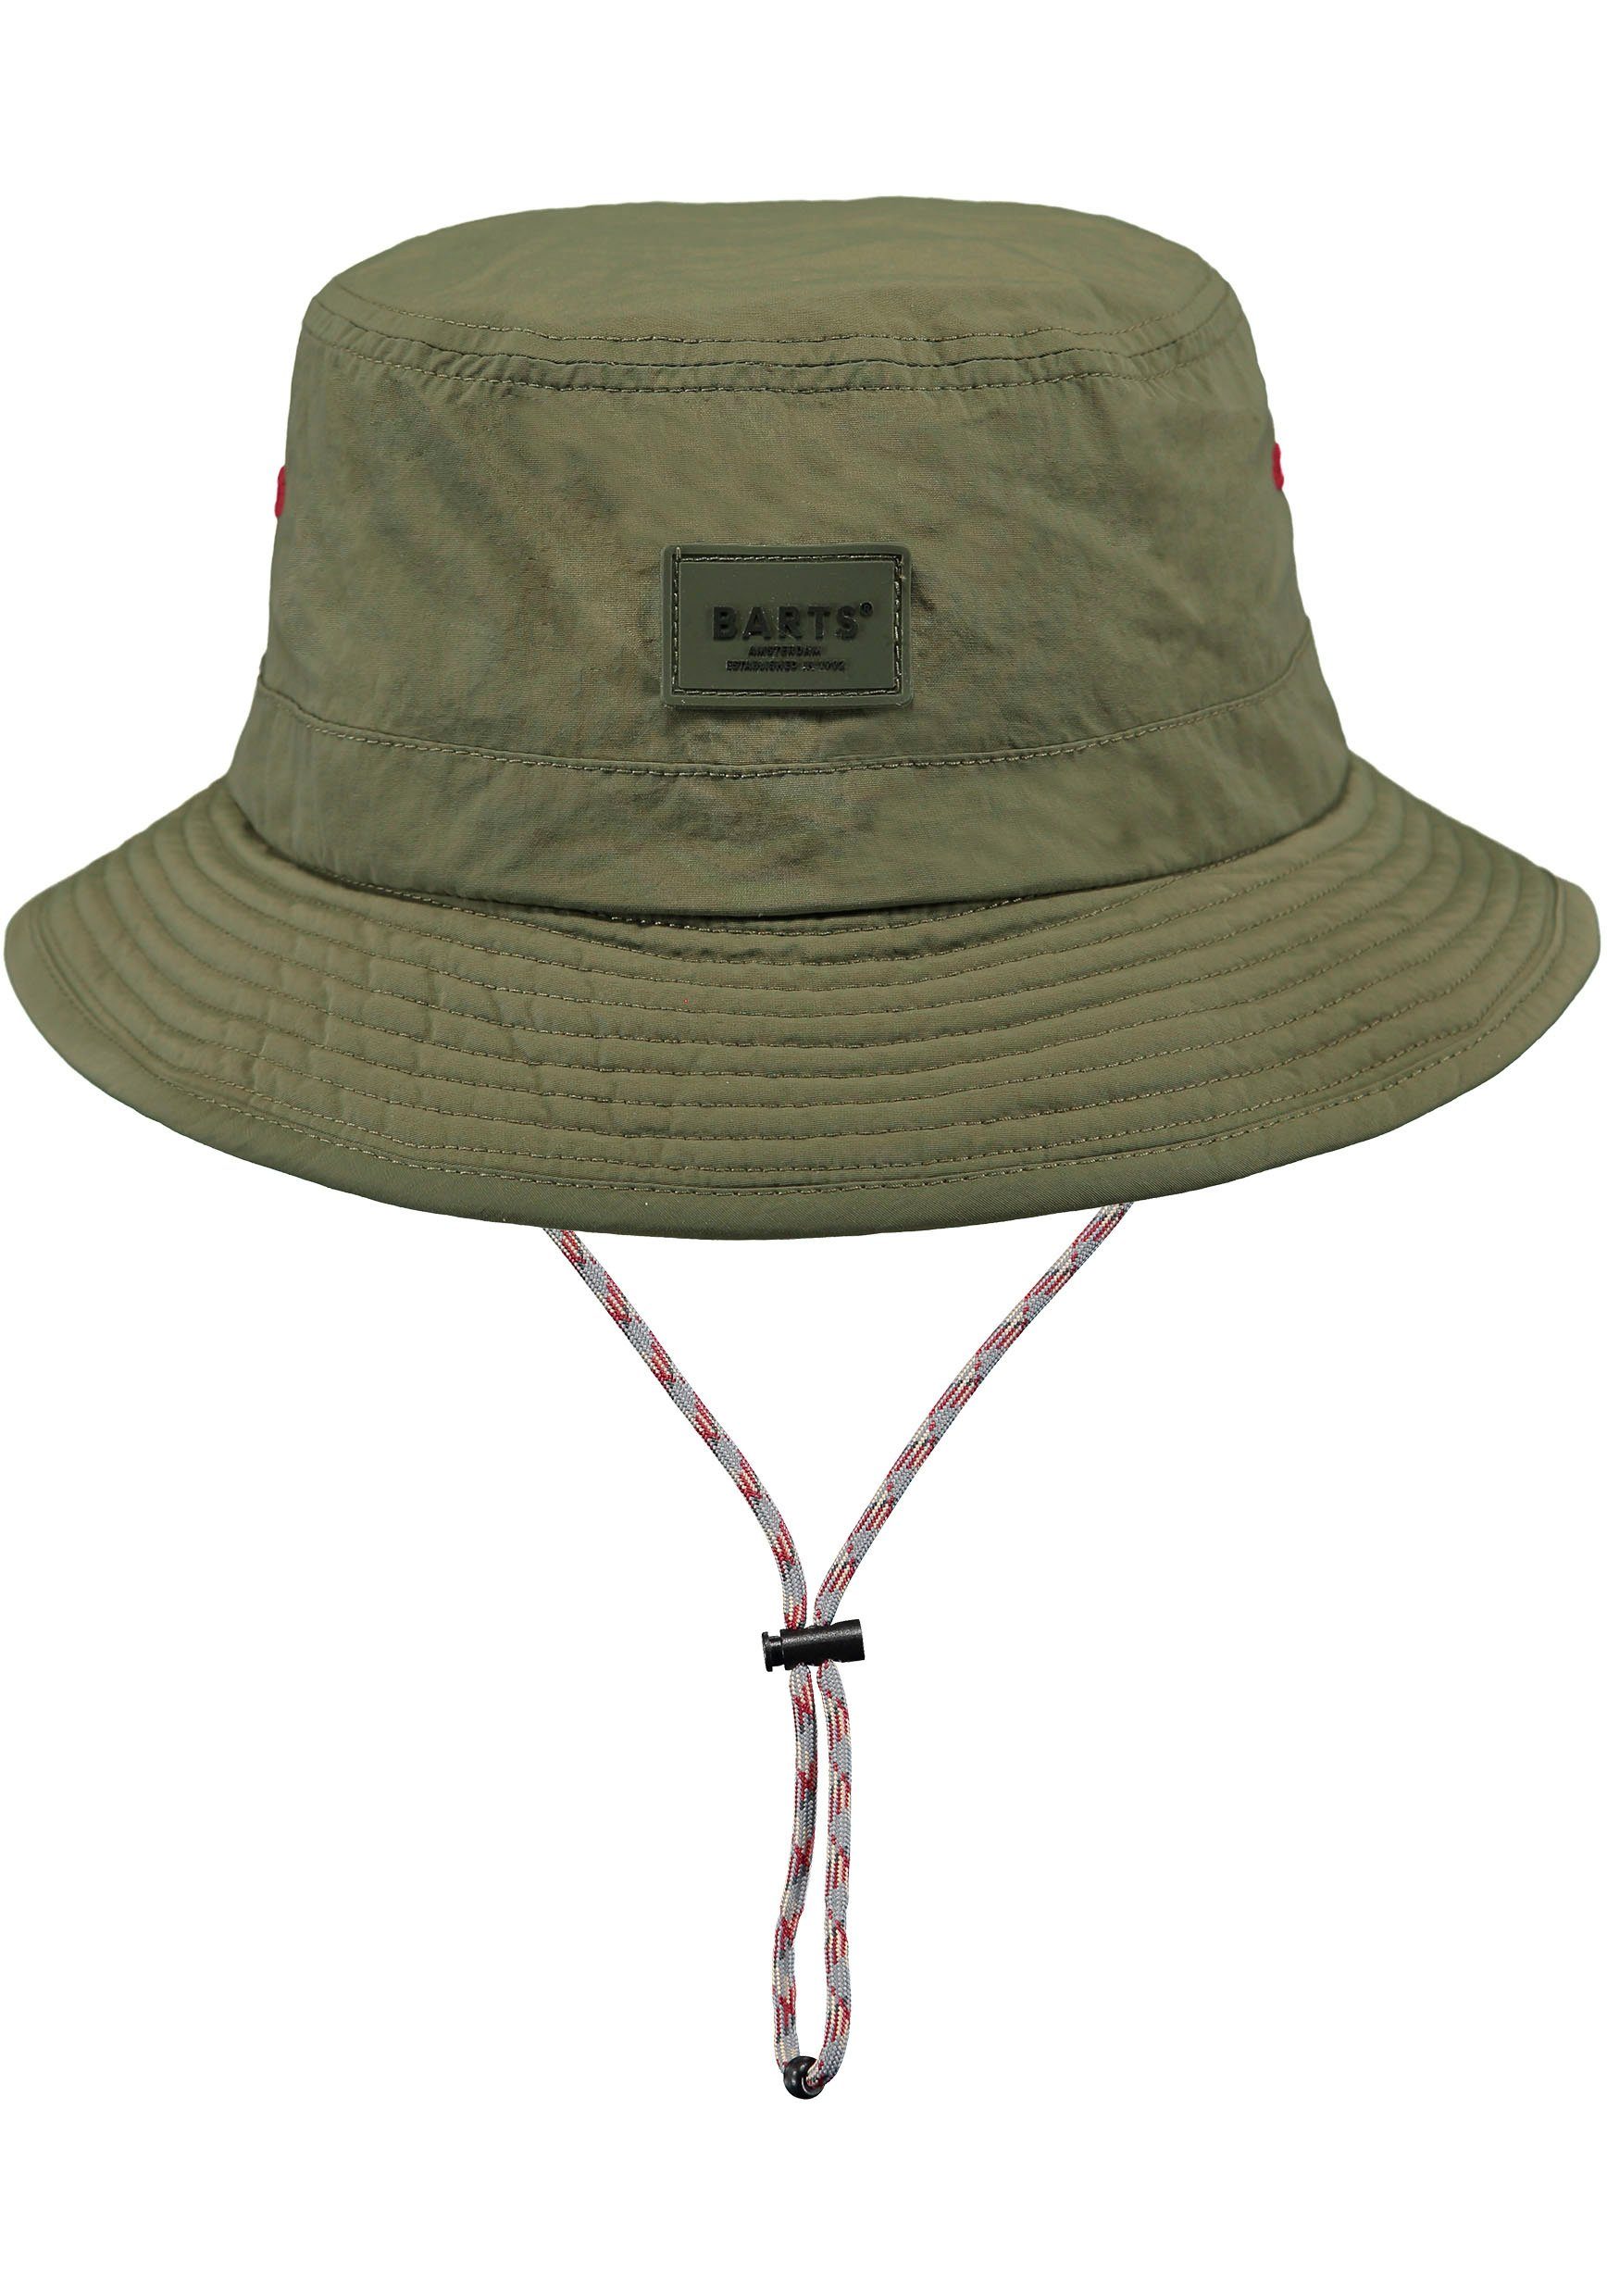 Barts mit olivgrün Fischerhut Passform durch verstellbare Hutband innenliegendes Bindeband,